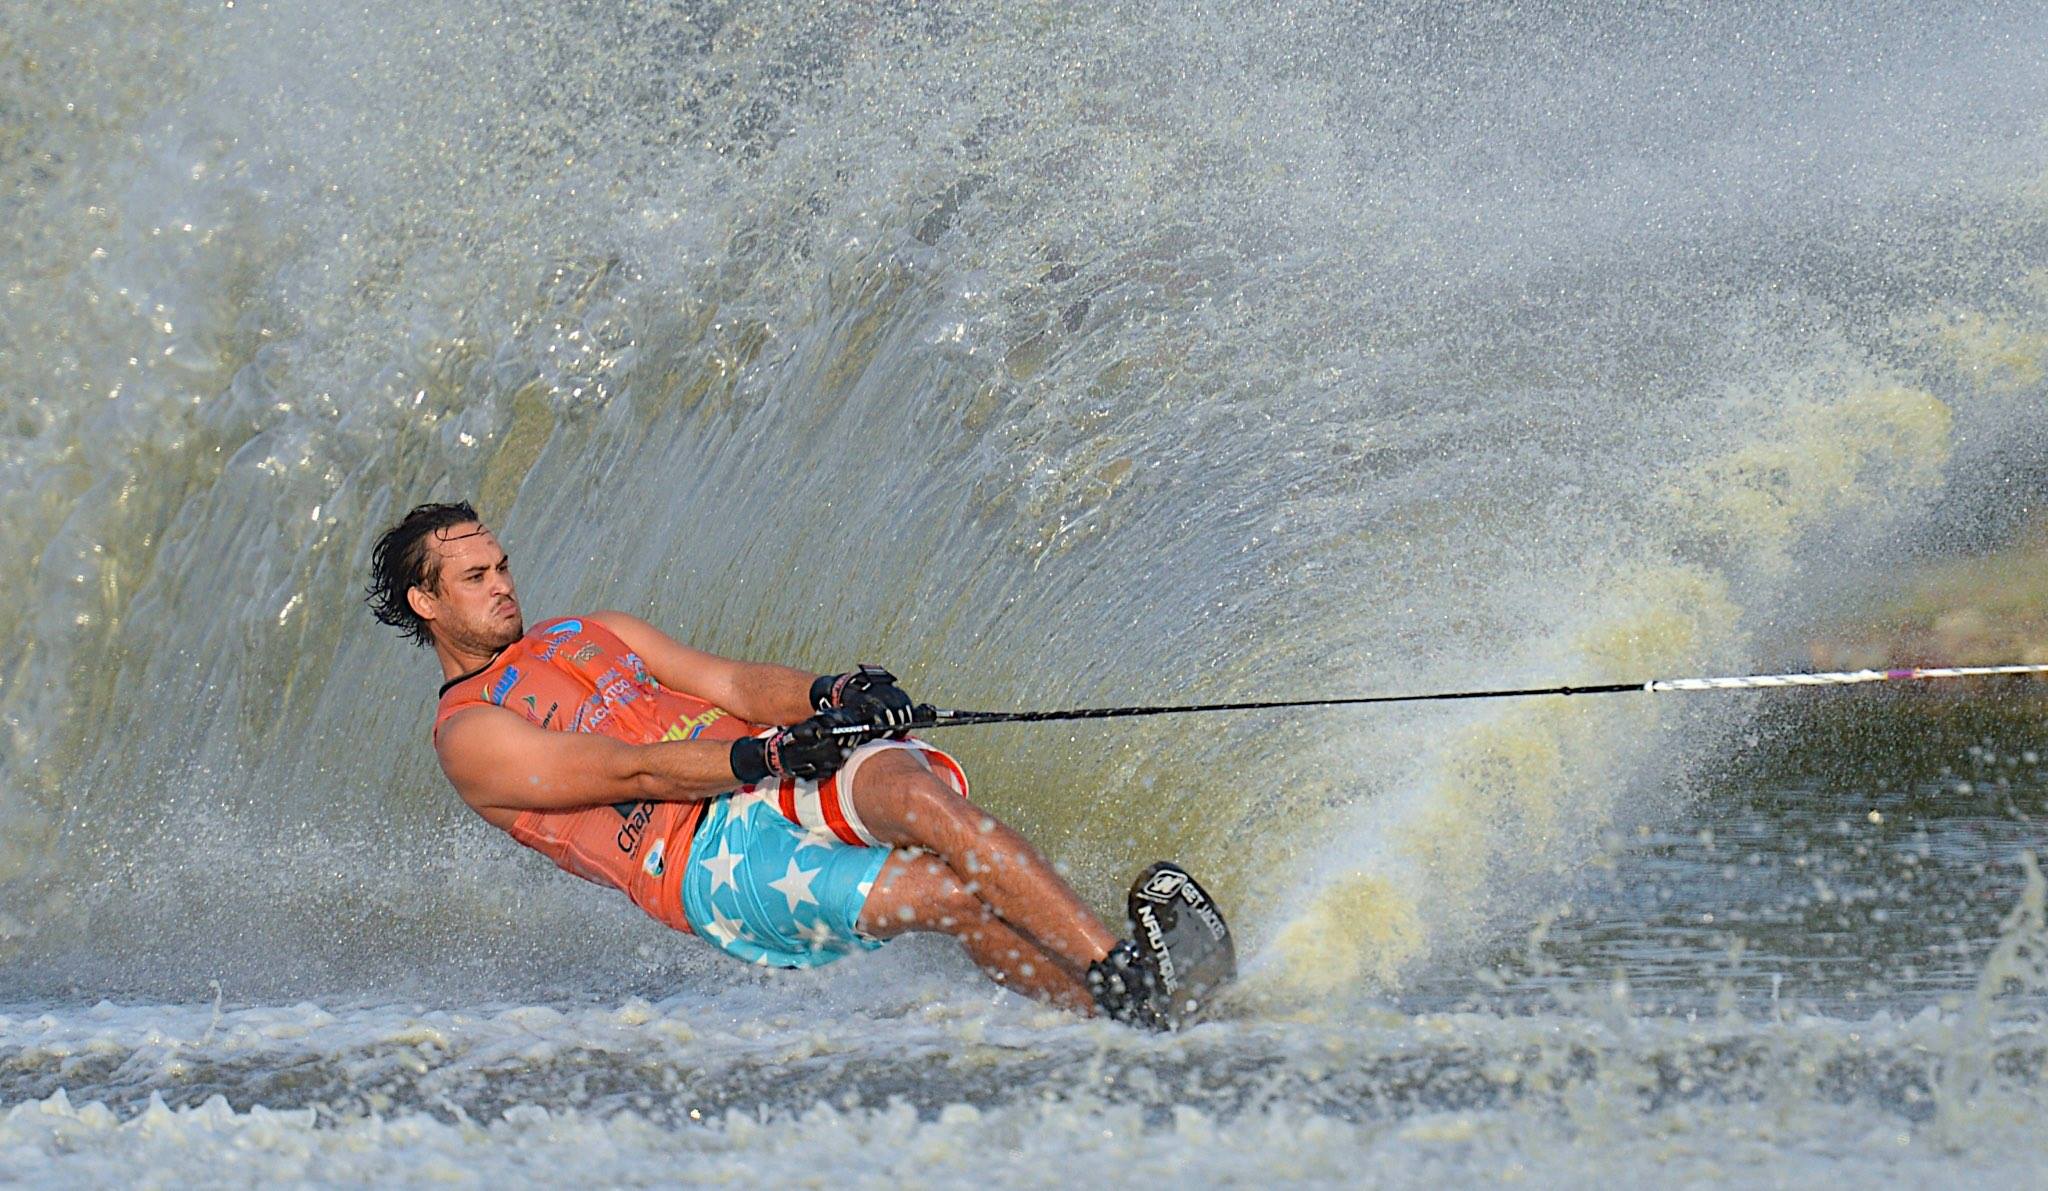 Как научиться кататься на водных лыжах